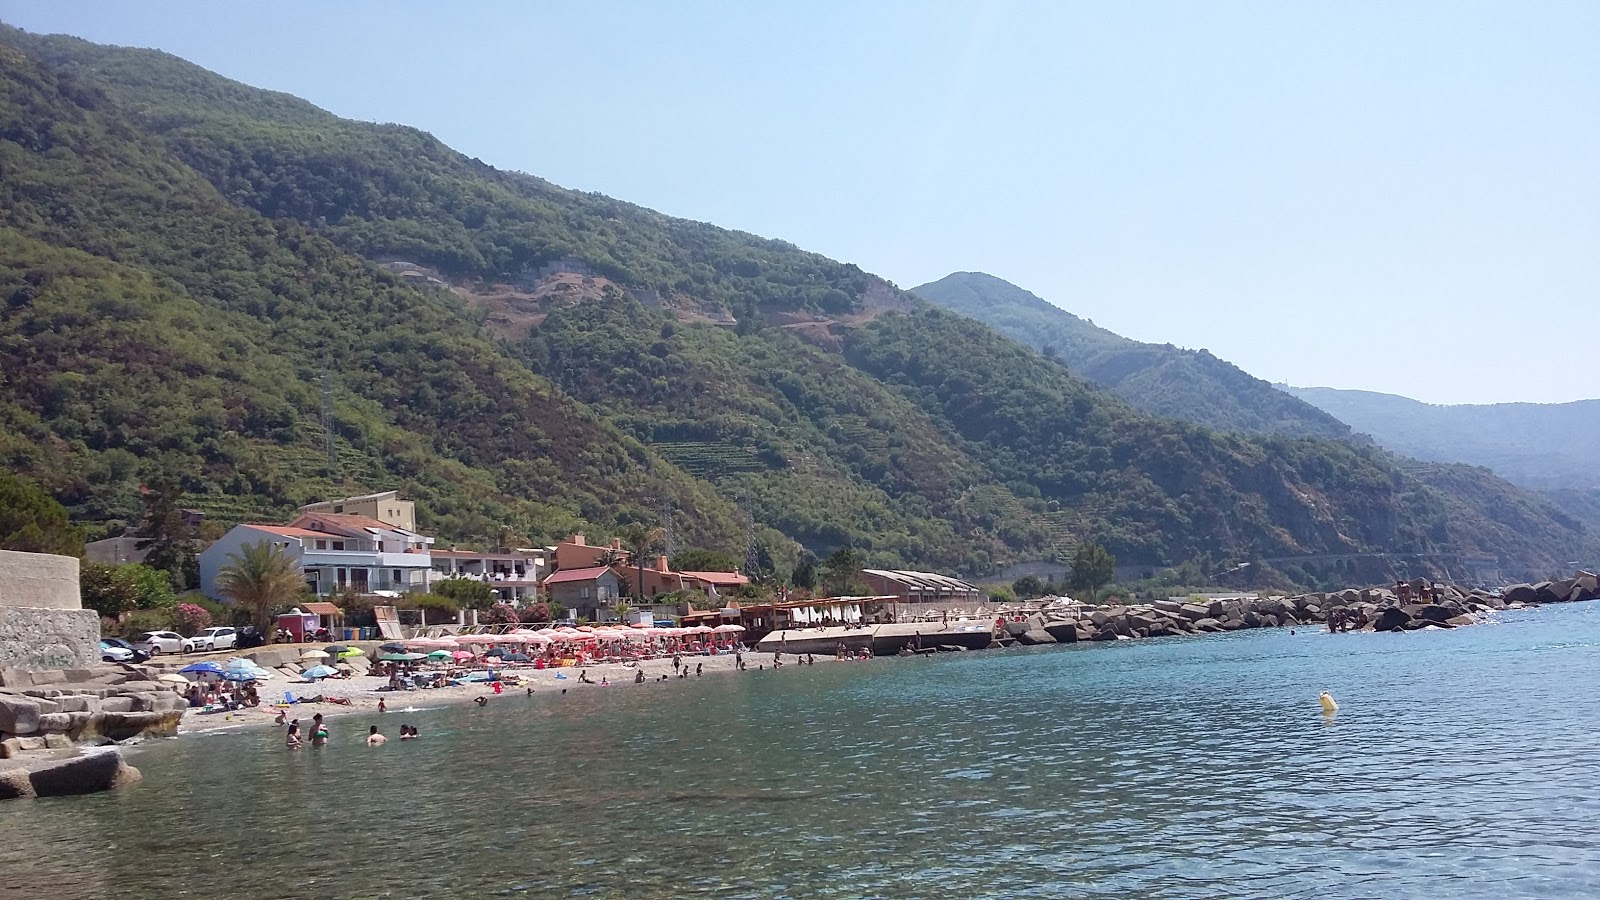 Photo of Spiaggia di Favazzina beach resort area